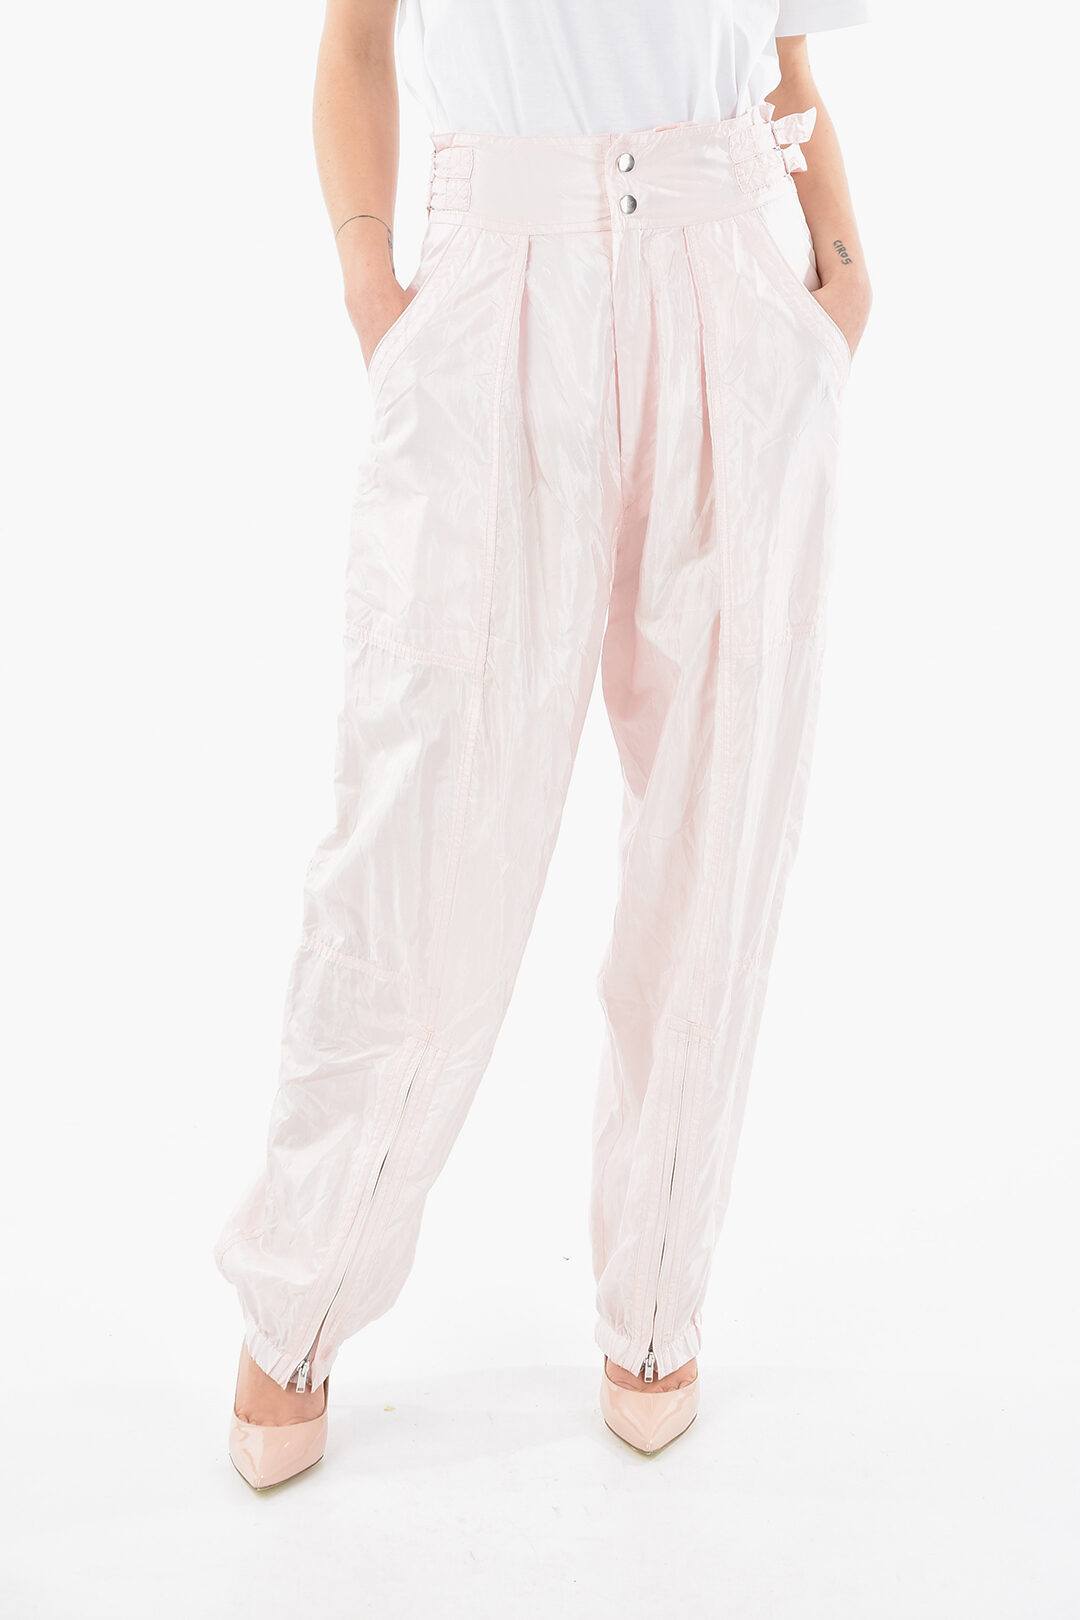 Silk and Nylon OLGA High-waisted Pants